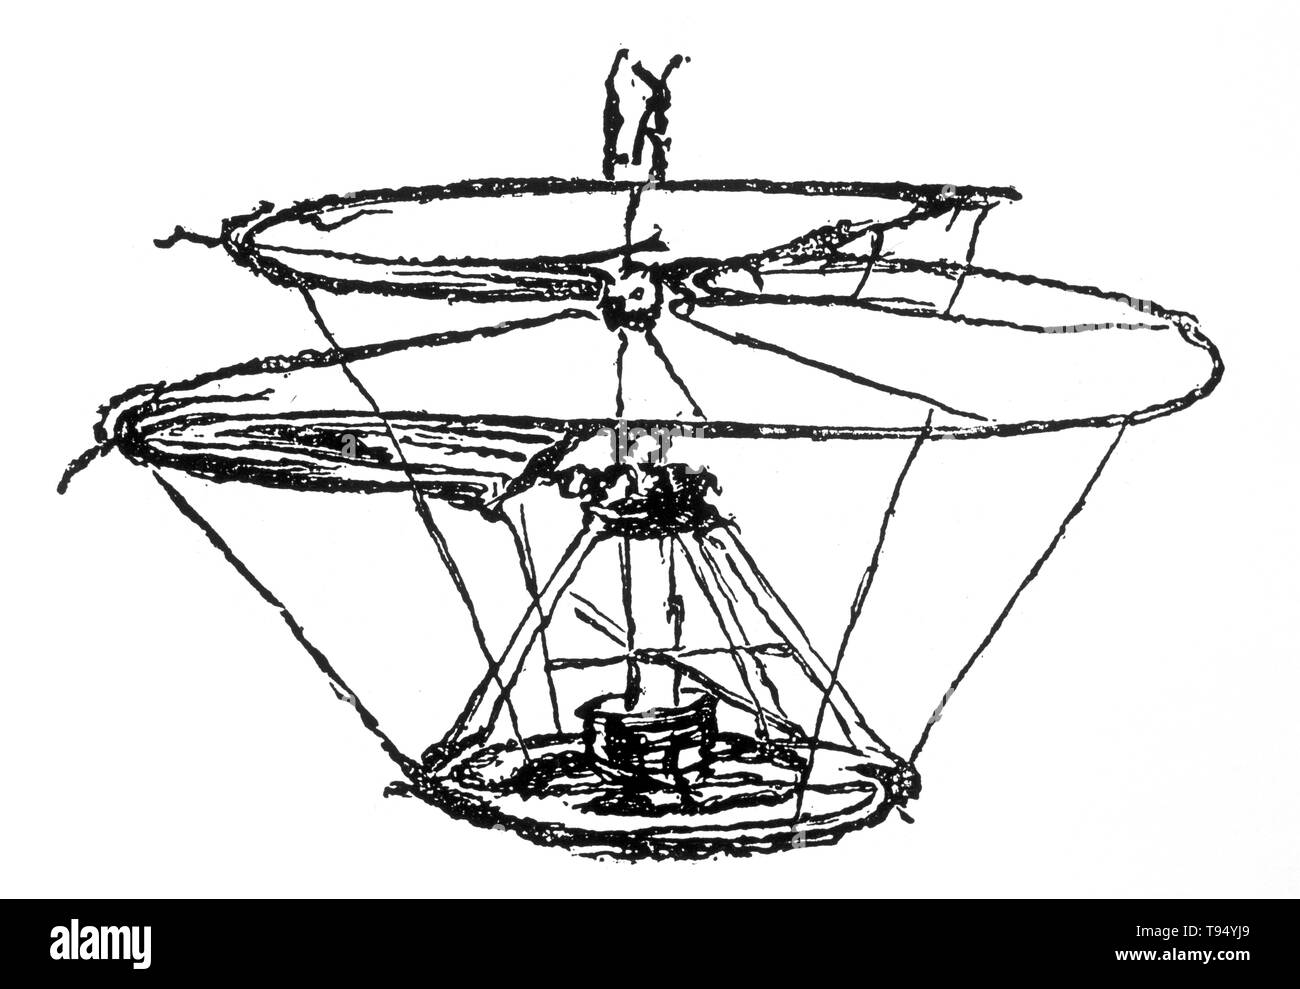 Eine Skizze von Leonardo da Vinci einer fliegenden Maschine als "helical Entlüftungsschraube' oder die 'Luftschraube" bekannt. Es war zu komprimieren Air Flug zu bekommen, ähnlich wie bei modernen Hubschrauber. Stockfoto